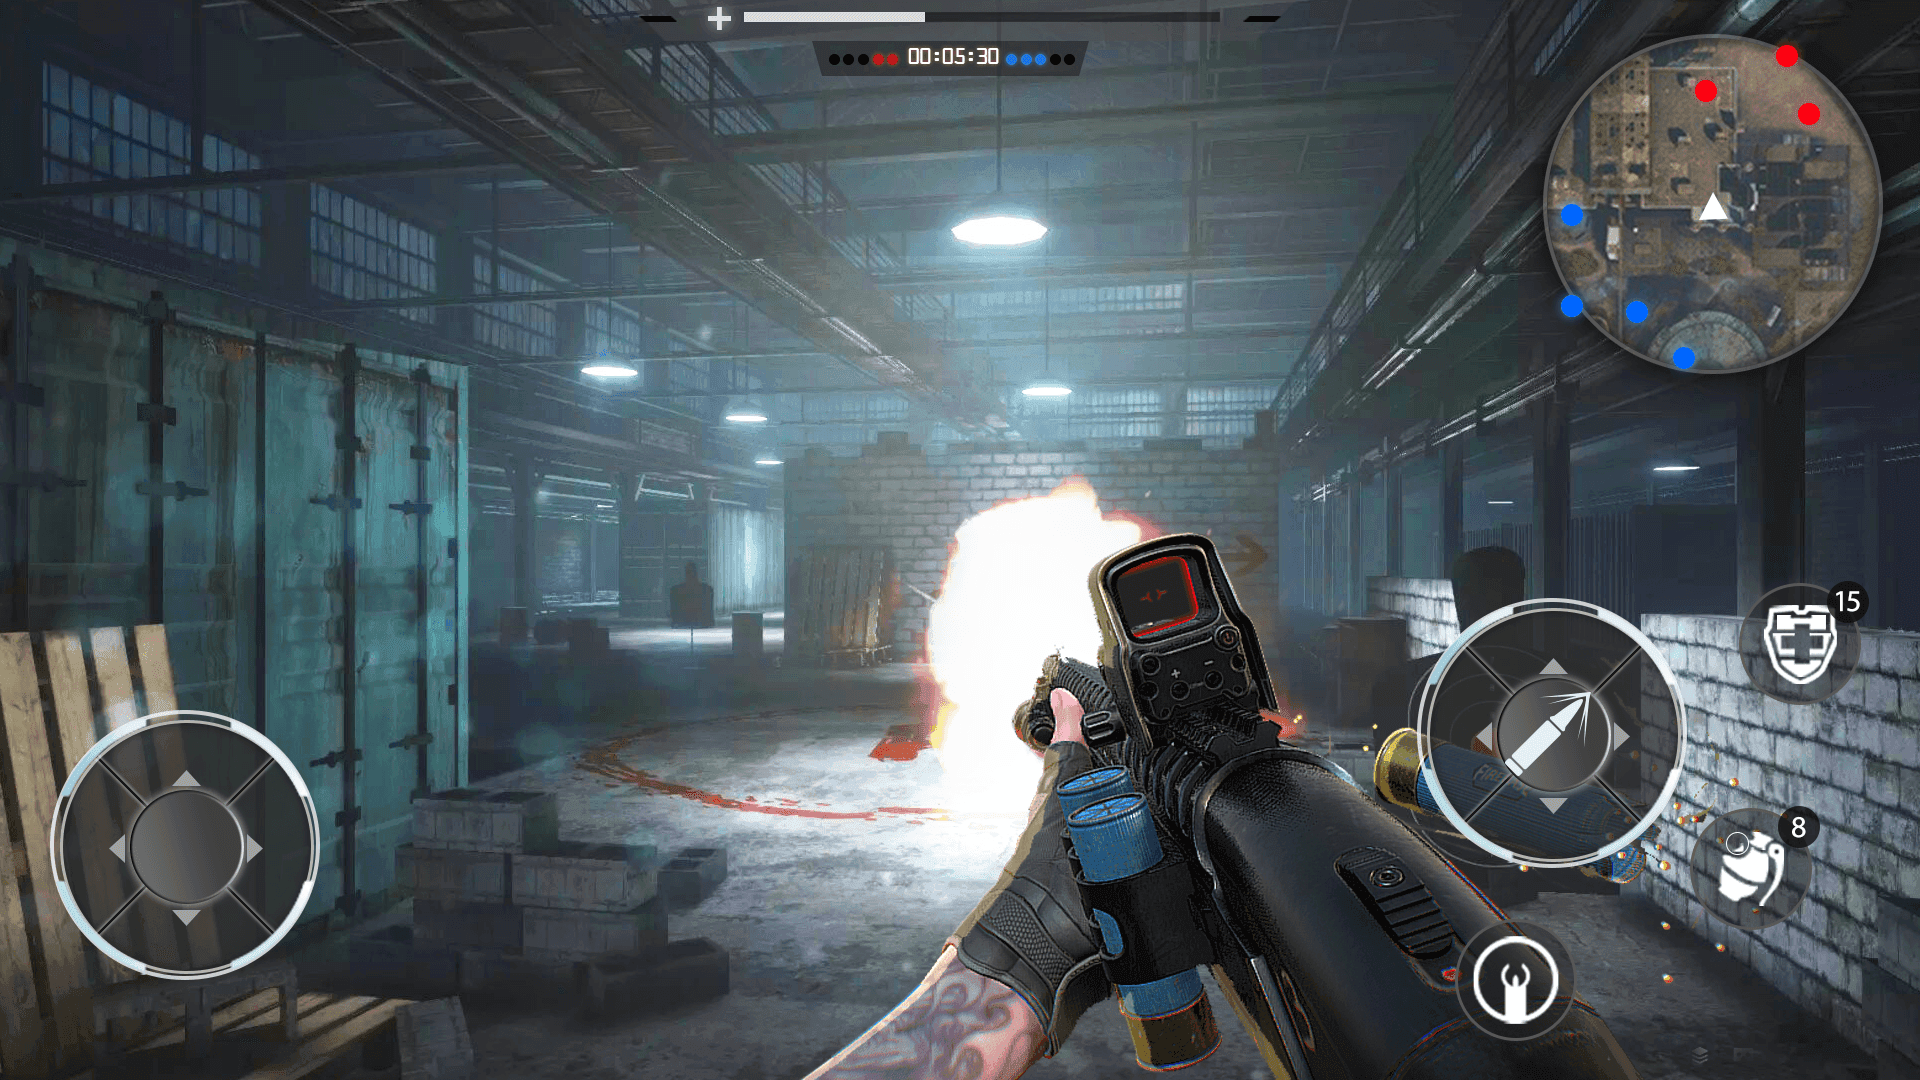 Screenshot 1 of Зов битвы: Стрельба по мишеням 2.8